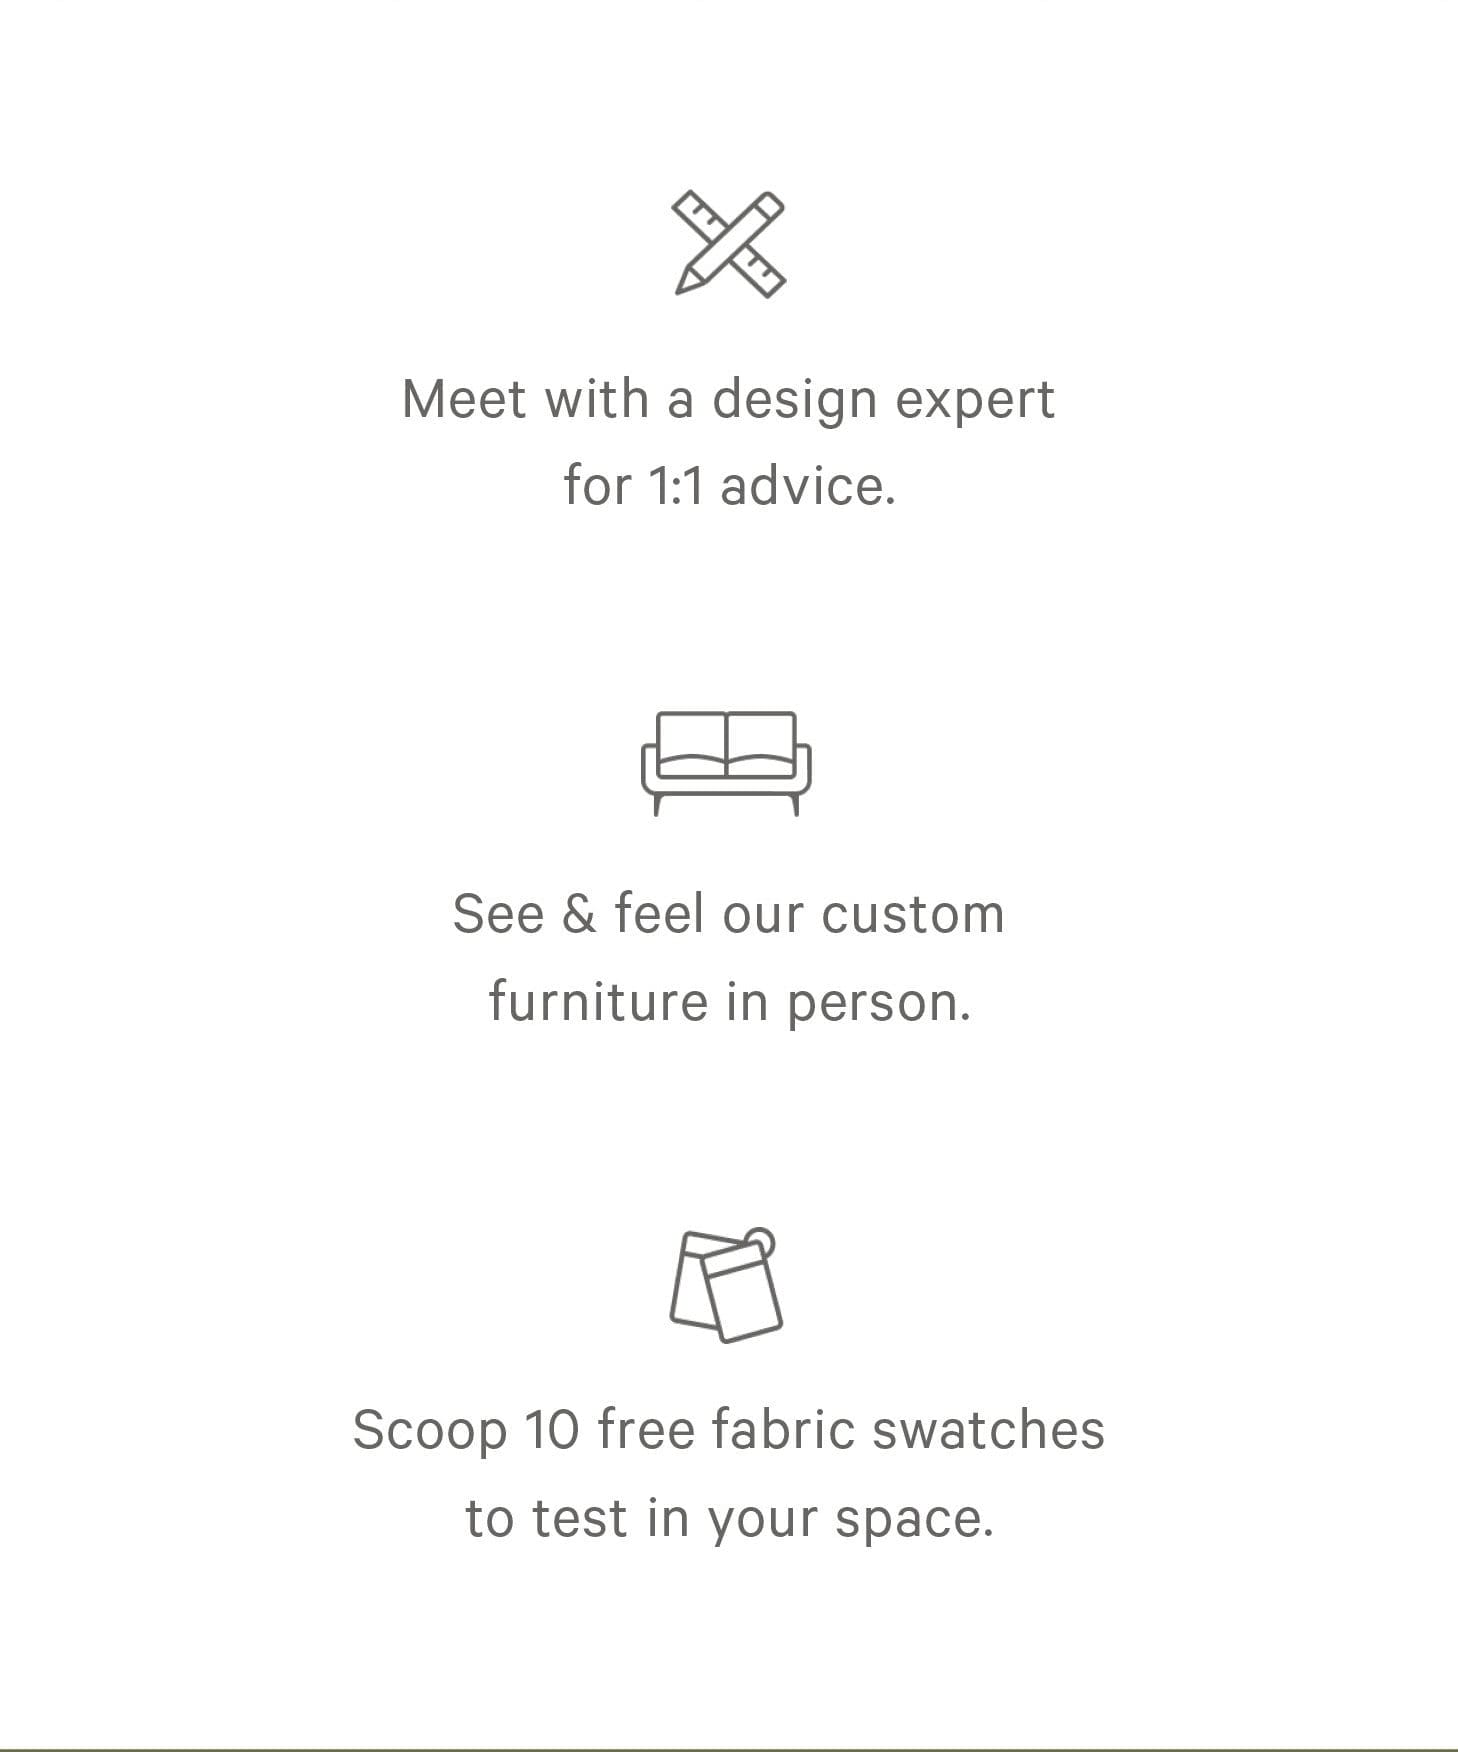 Meet with a design expert